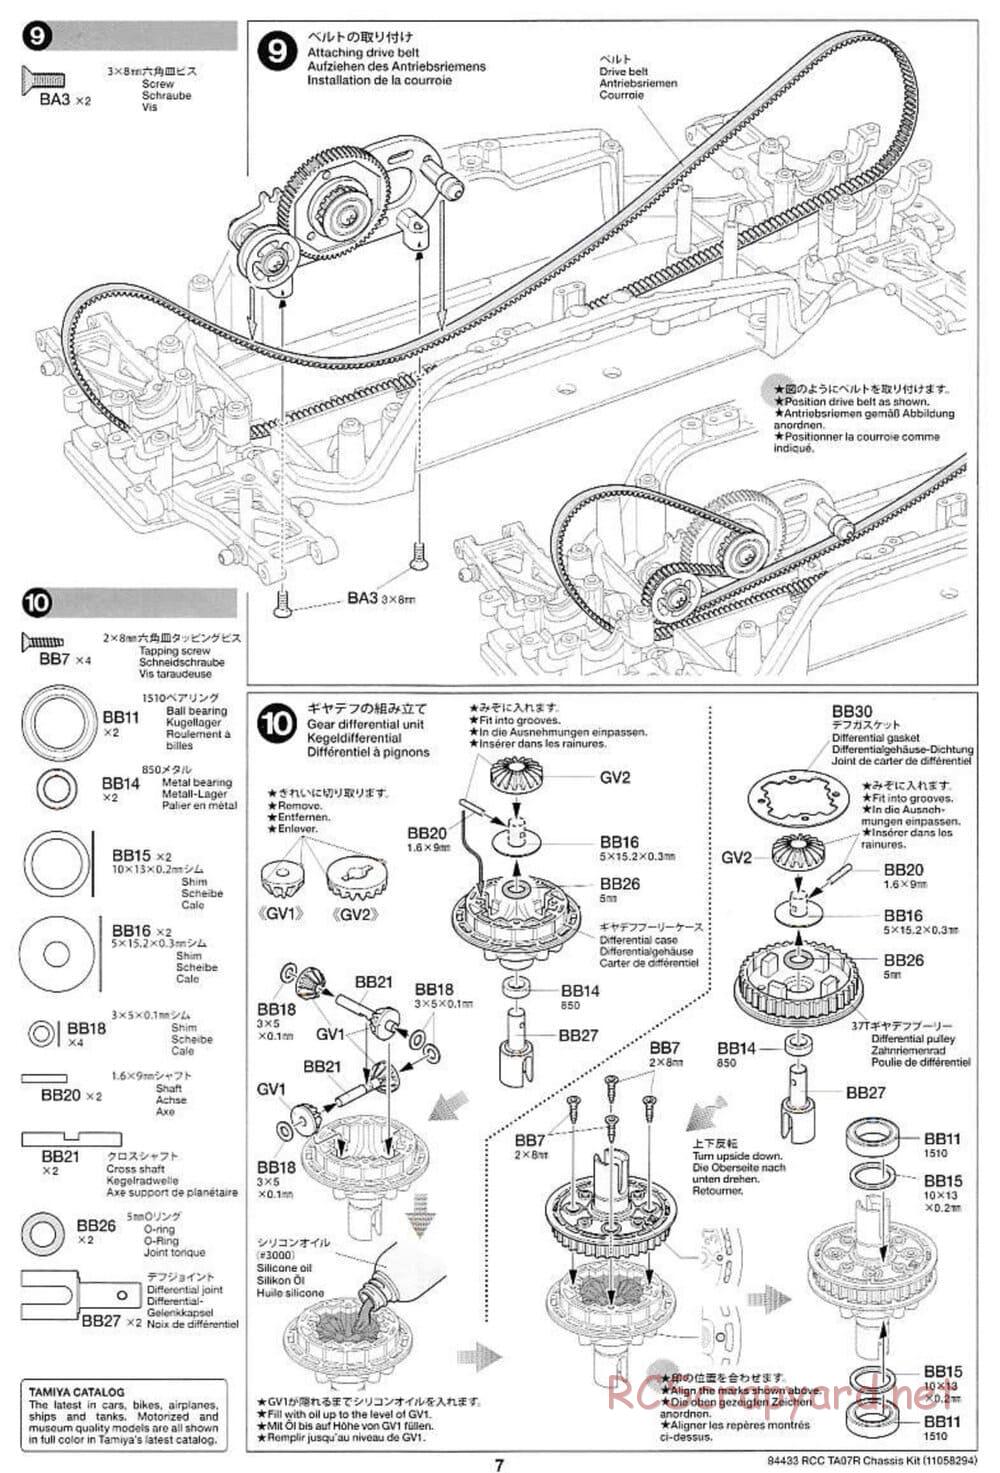 Tamiya - TA07 R Chassis - Manual - Page 7